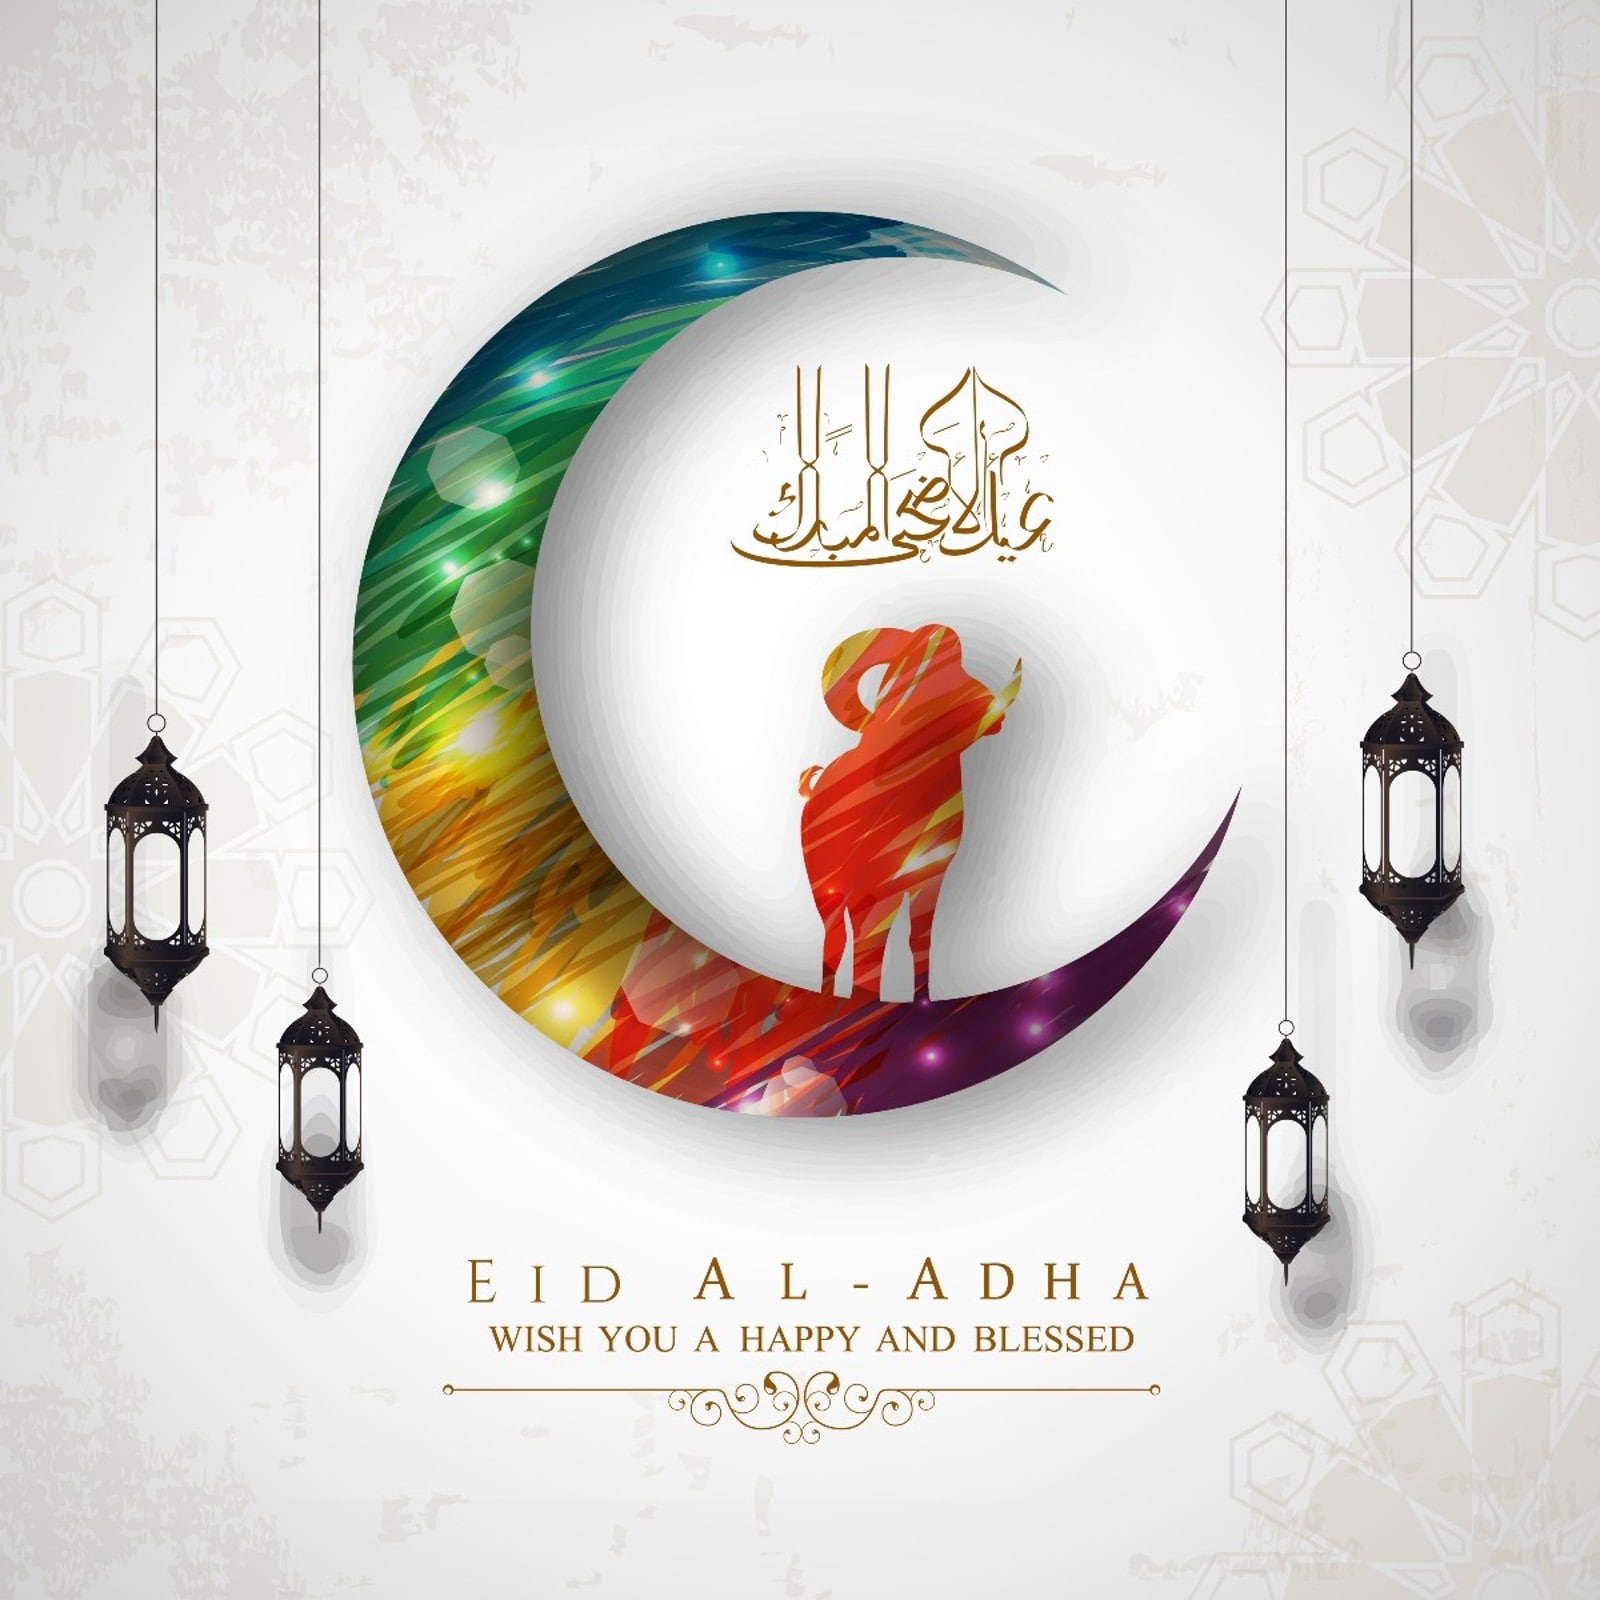 Bakrid 2022 Eid alAdha Moon Sighting in Saudi Arabia, India and Other